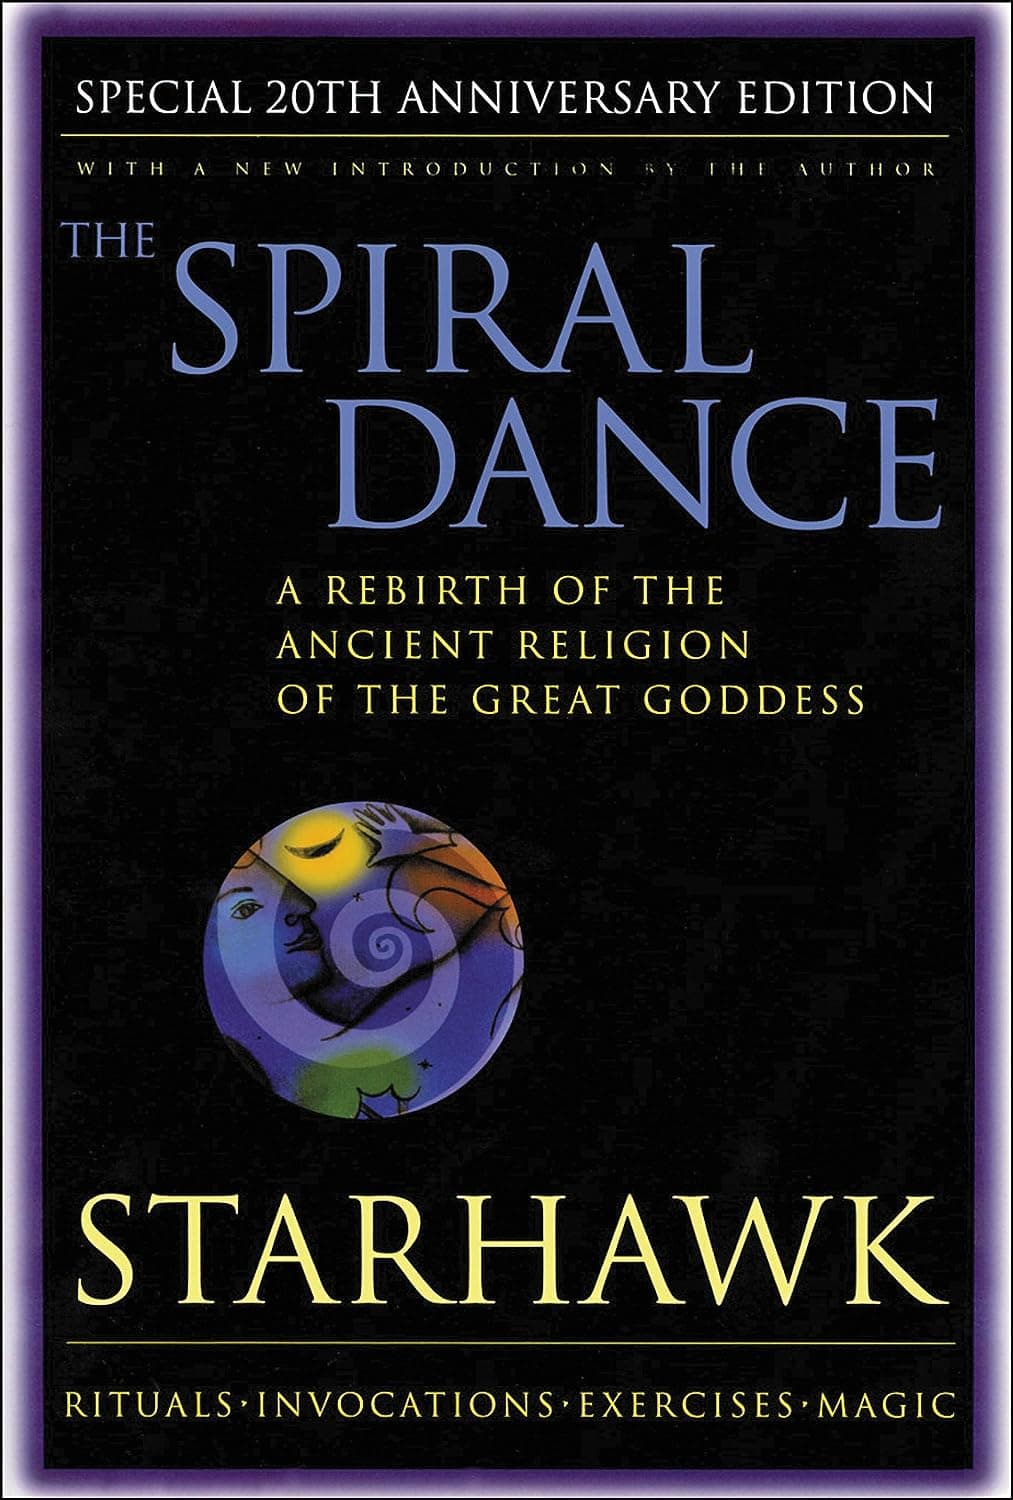 "The Spiral Dance" by Starhawk